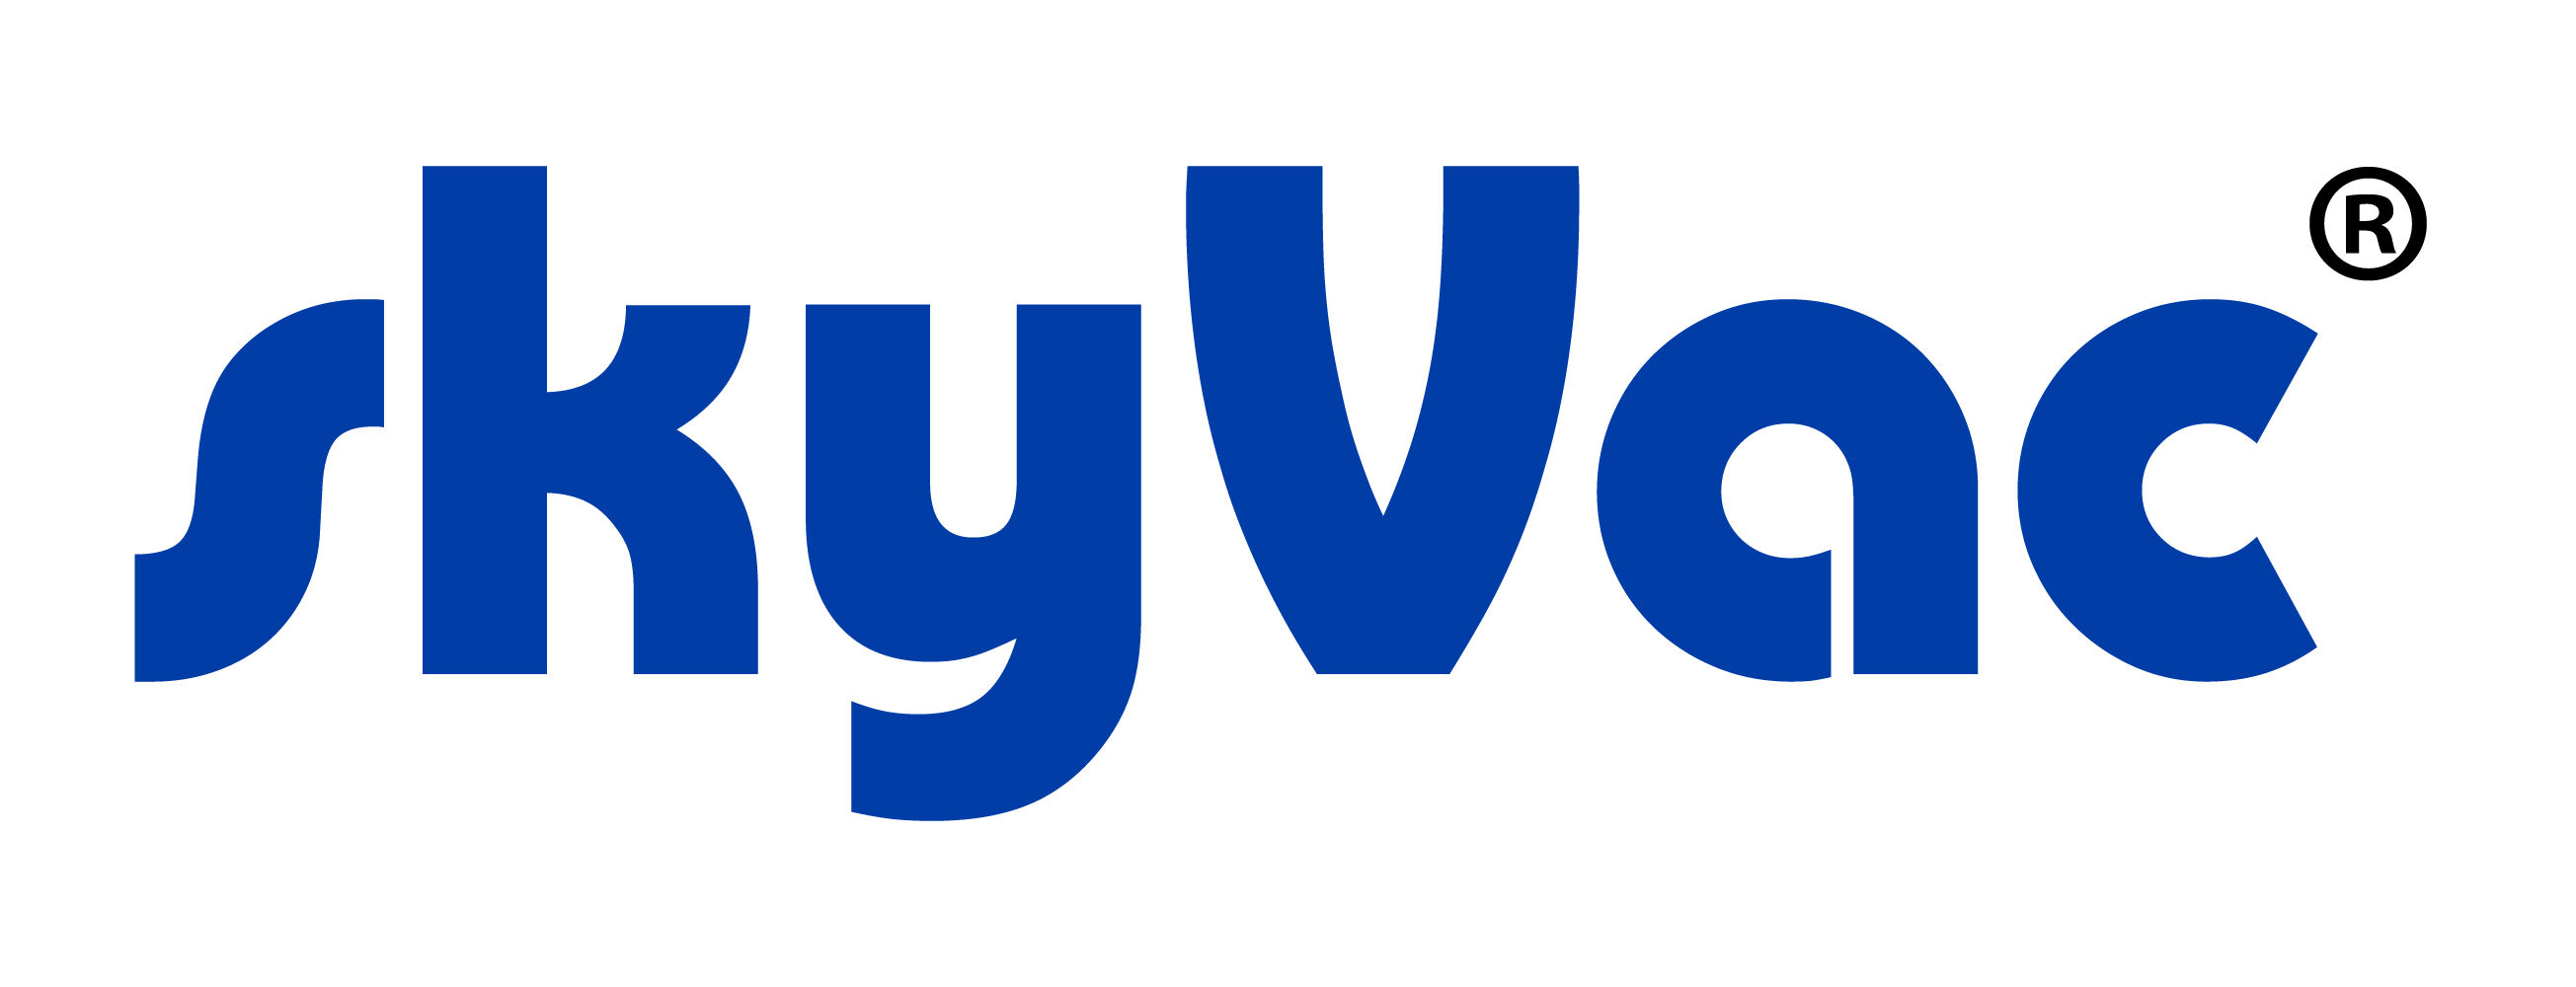 skyVac / Spinaclean Ltd